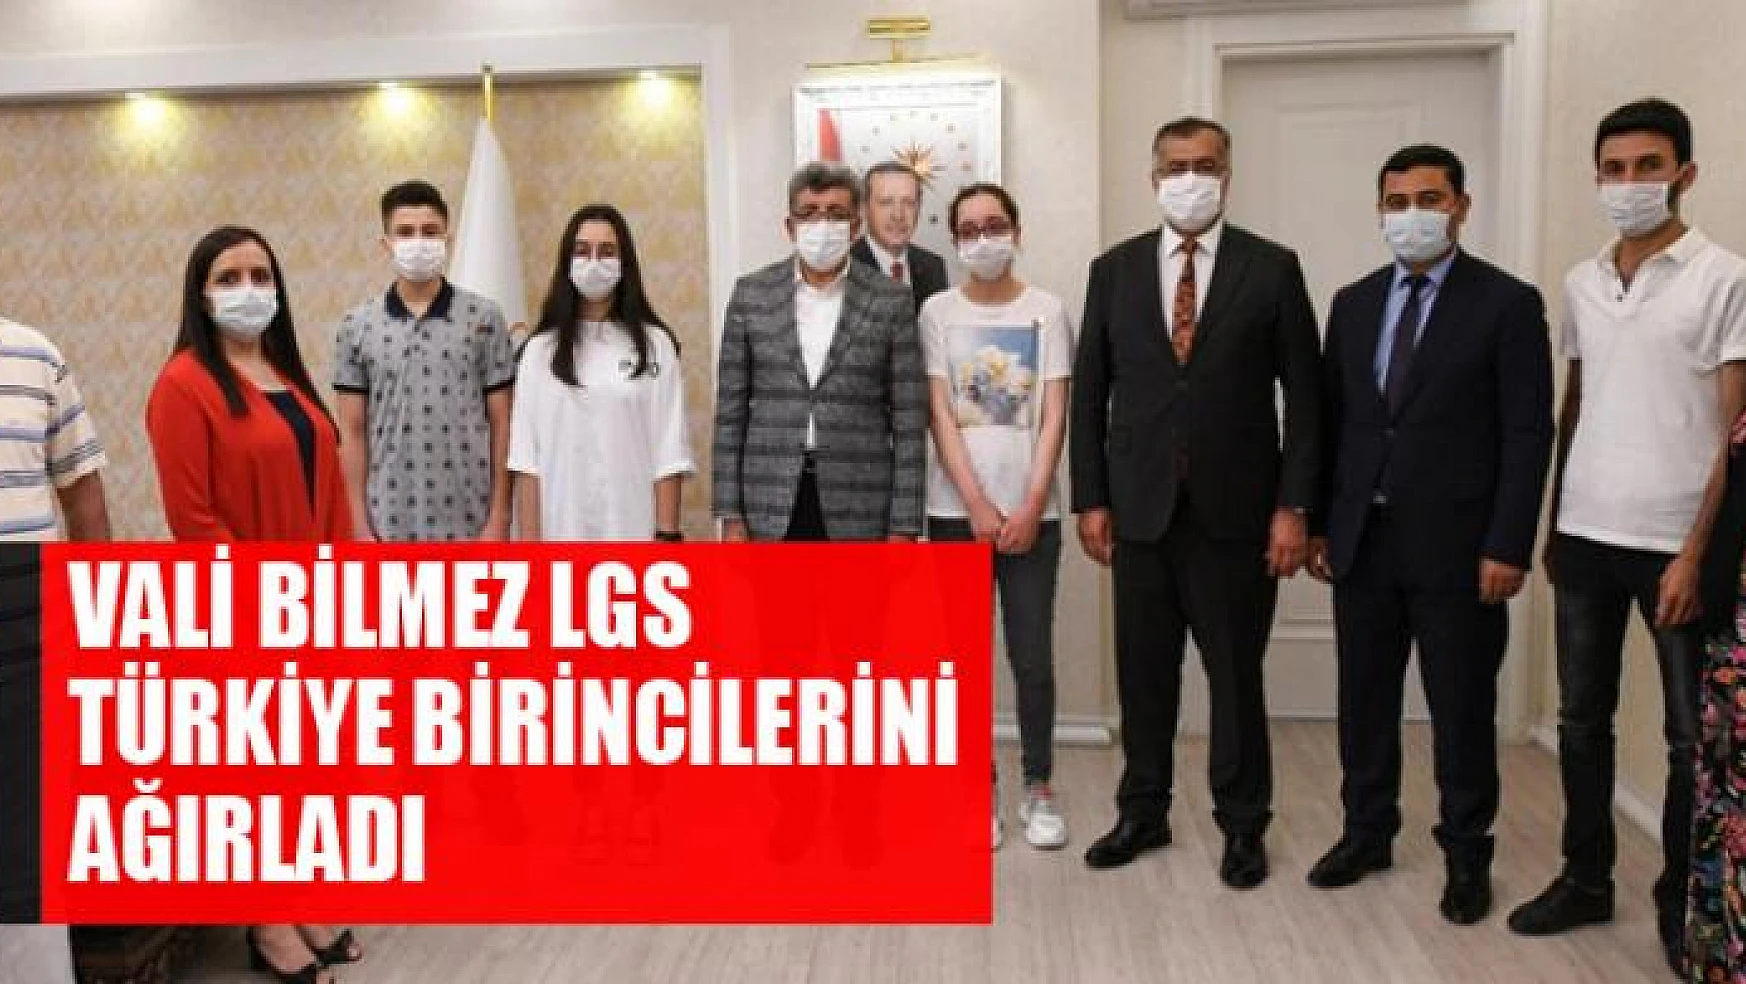 Vali Bilmez LGS Türkiye birincilerini ağırladı